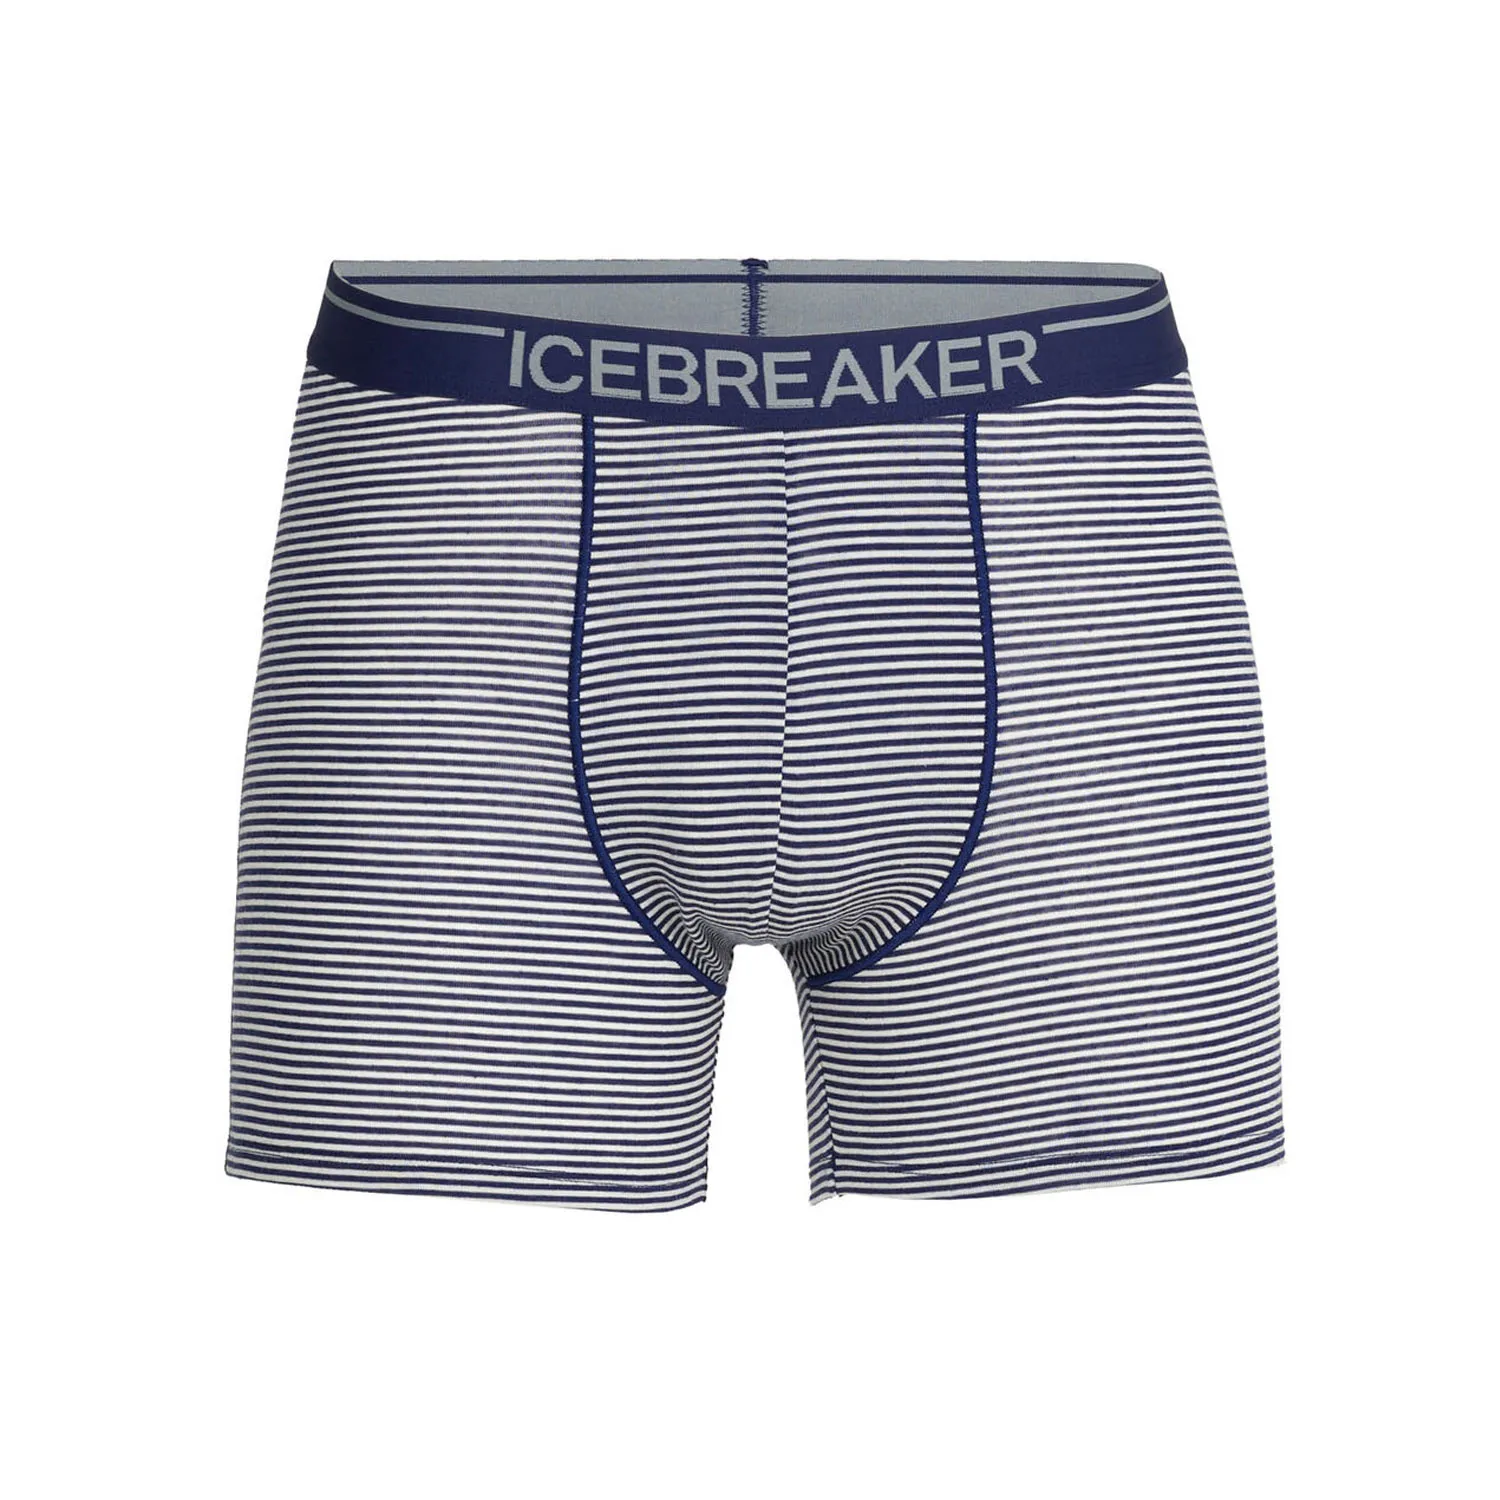 Boxers Mens Icebreaker - den hos Friluftsland